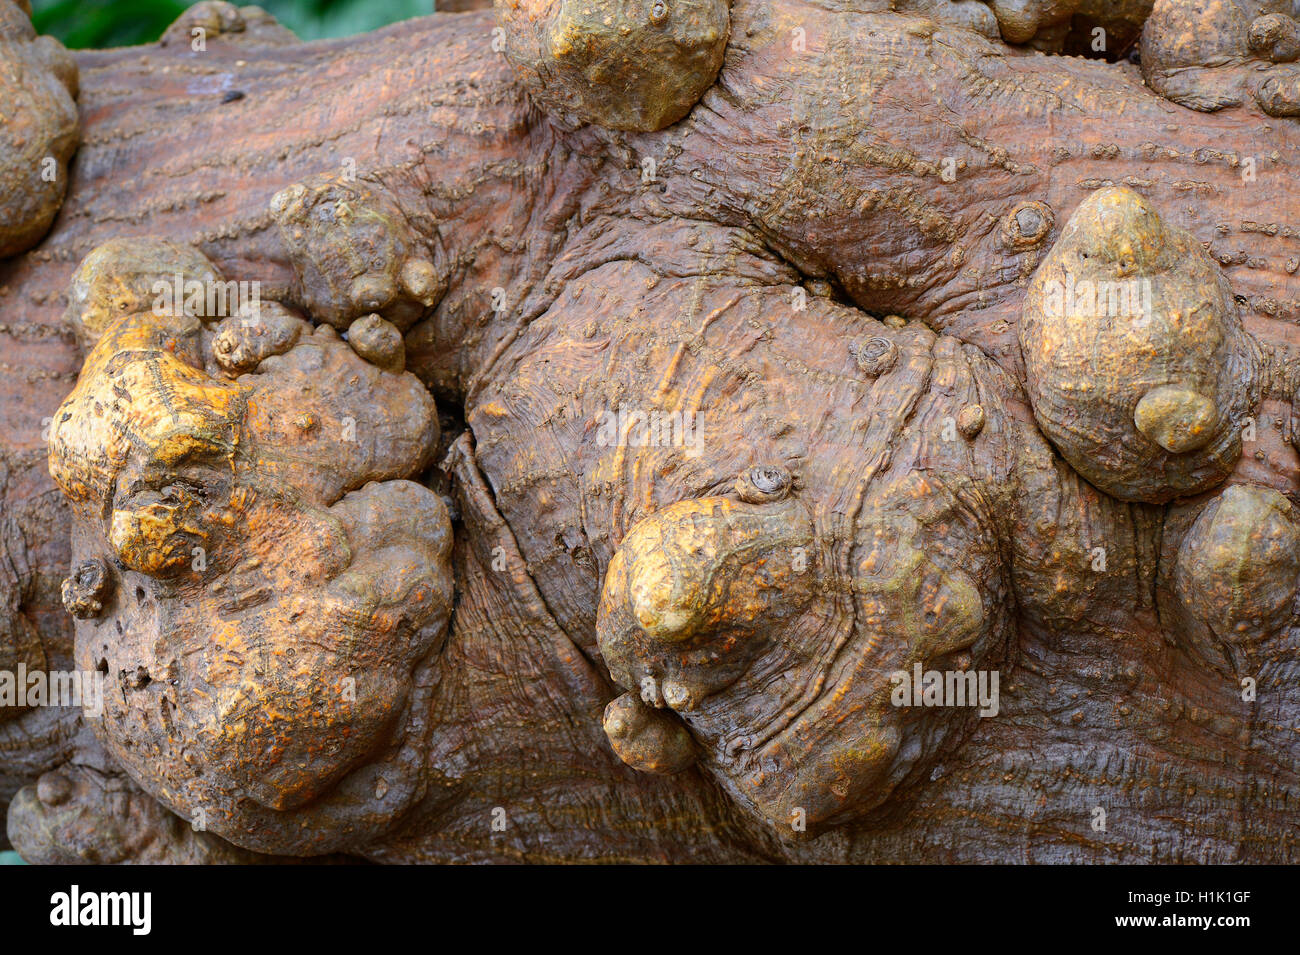 Charakteristische Beulen am Stamm des Mexikanischen Korallenbaum (Erythrina americana), Mittelamerika Foto Stock